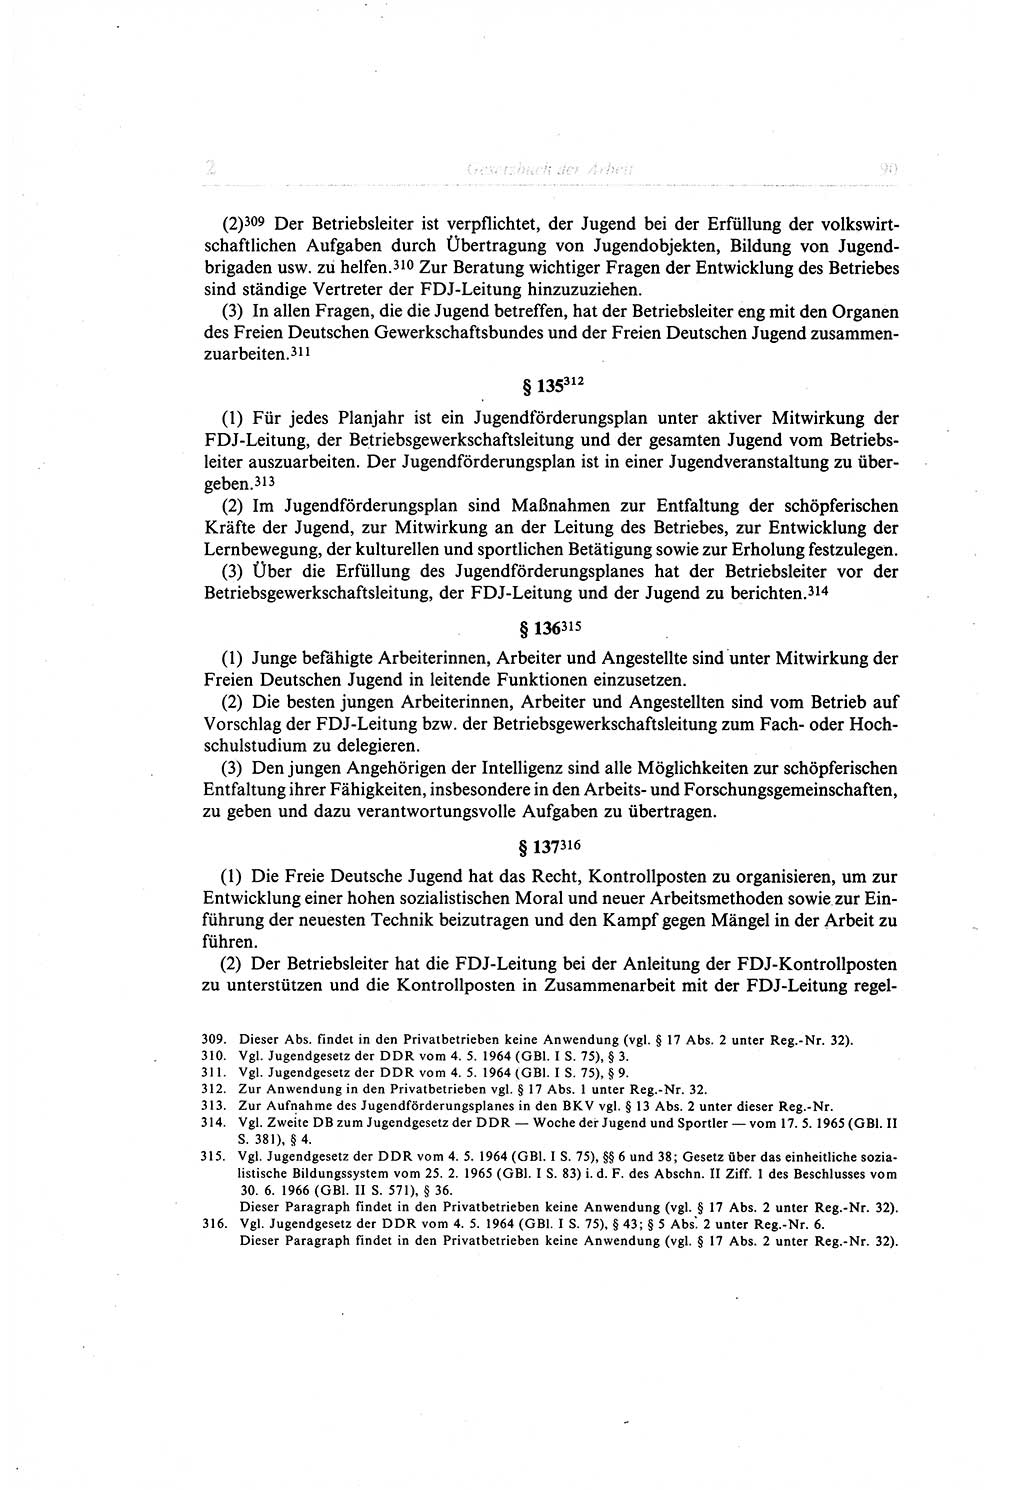 Gesetzbuch der Arbeit (GBA) und andere ausgewählte rechtliche Bestimmungen [Deutsche Demokratische Republik (DDR)] 1968, Seite 90 (GBA DDR 1968, S. 90)